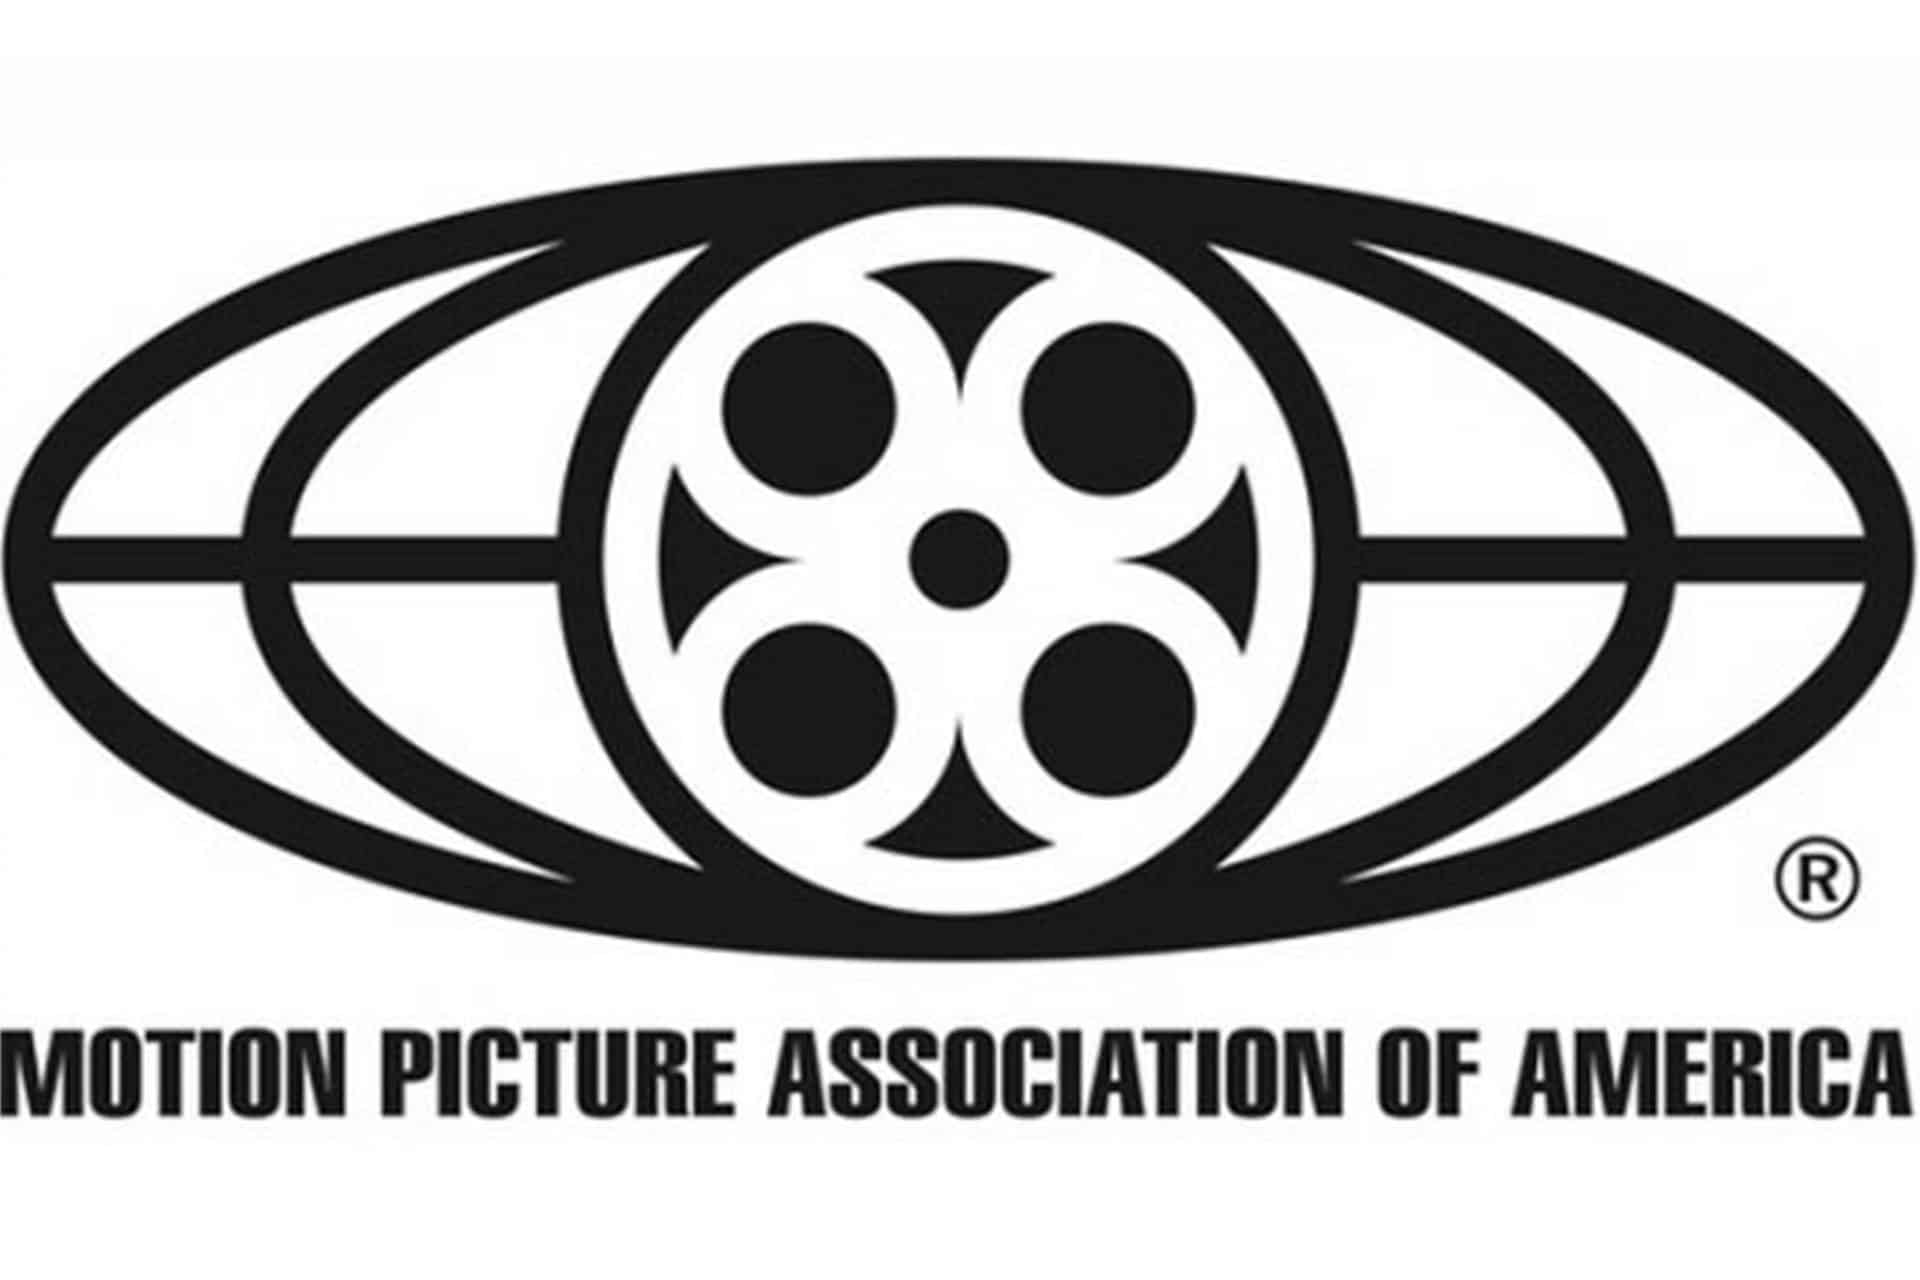 Sony Pictures habrí­a dudado de la metodologí­a de la MPAA para cuantificar el daño por piraterí­a.